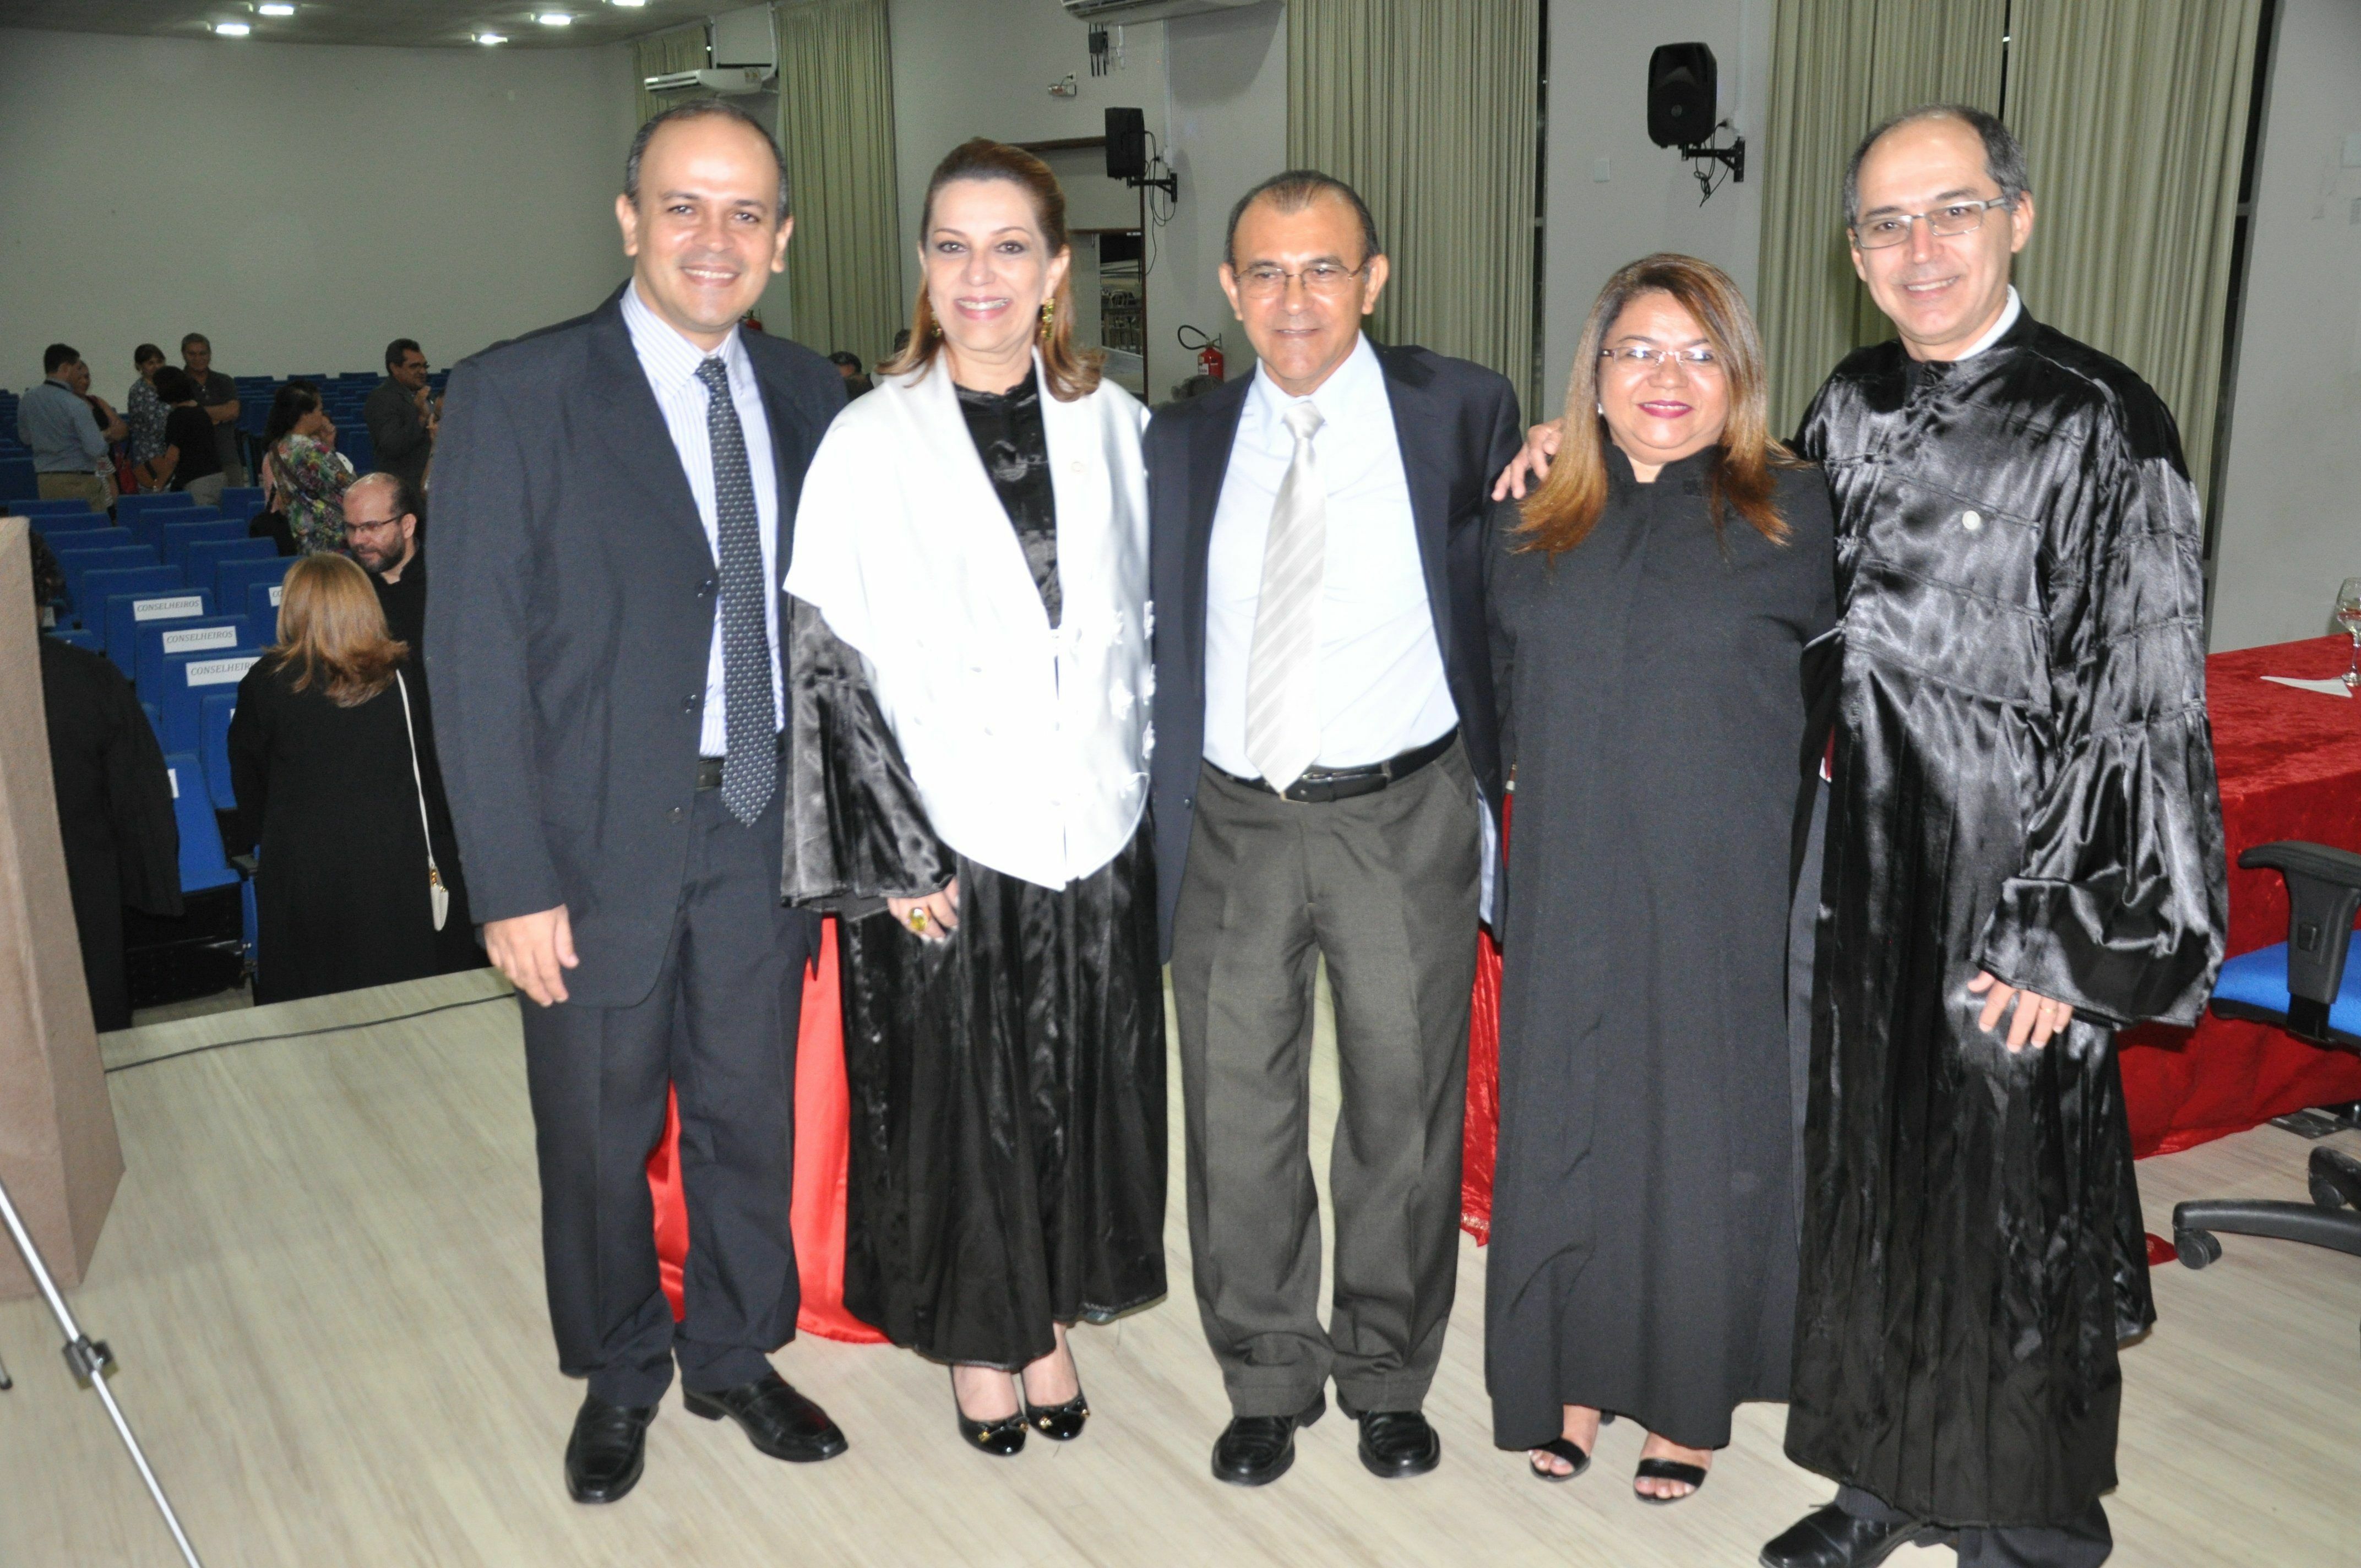 Da esquerda para direita, professores: Allan Soljenitisin, Márcia Perales, Walmir de Albuquerque, Simone Baçal, e Hedinaldo Lima